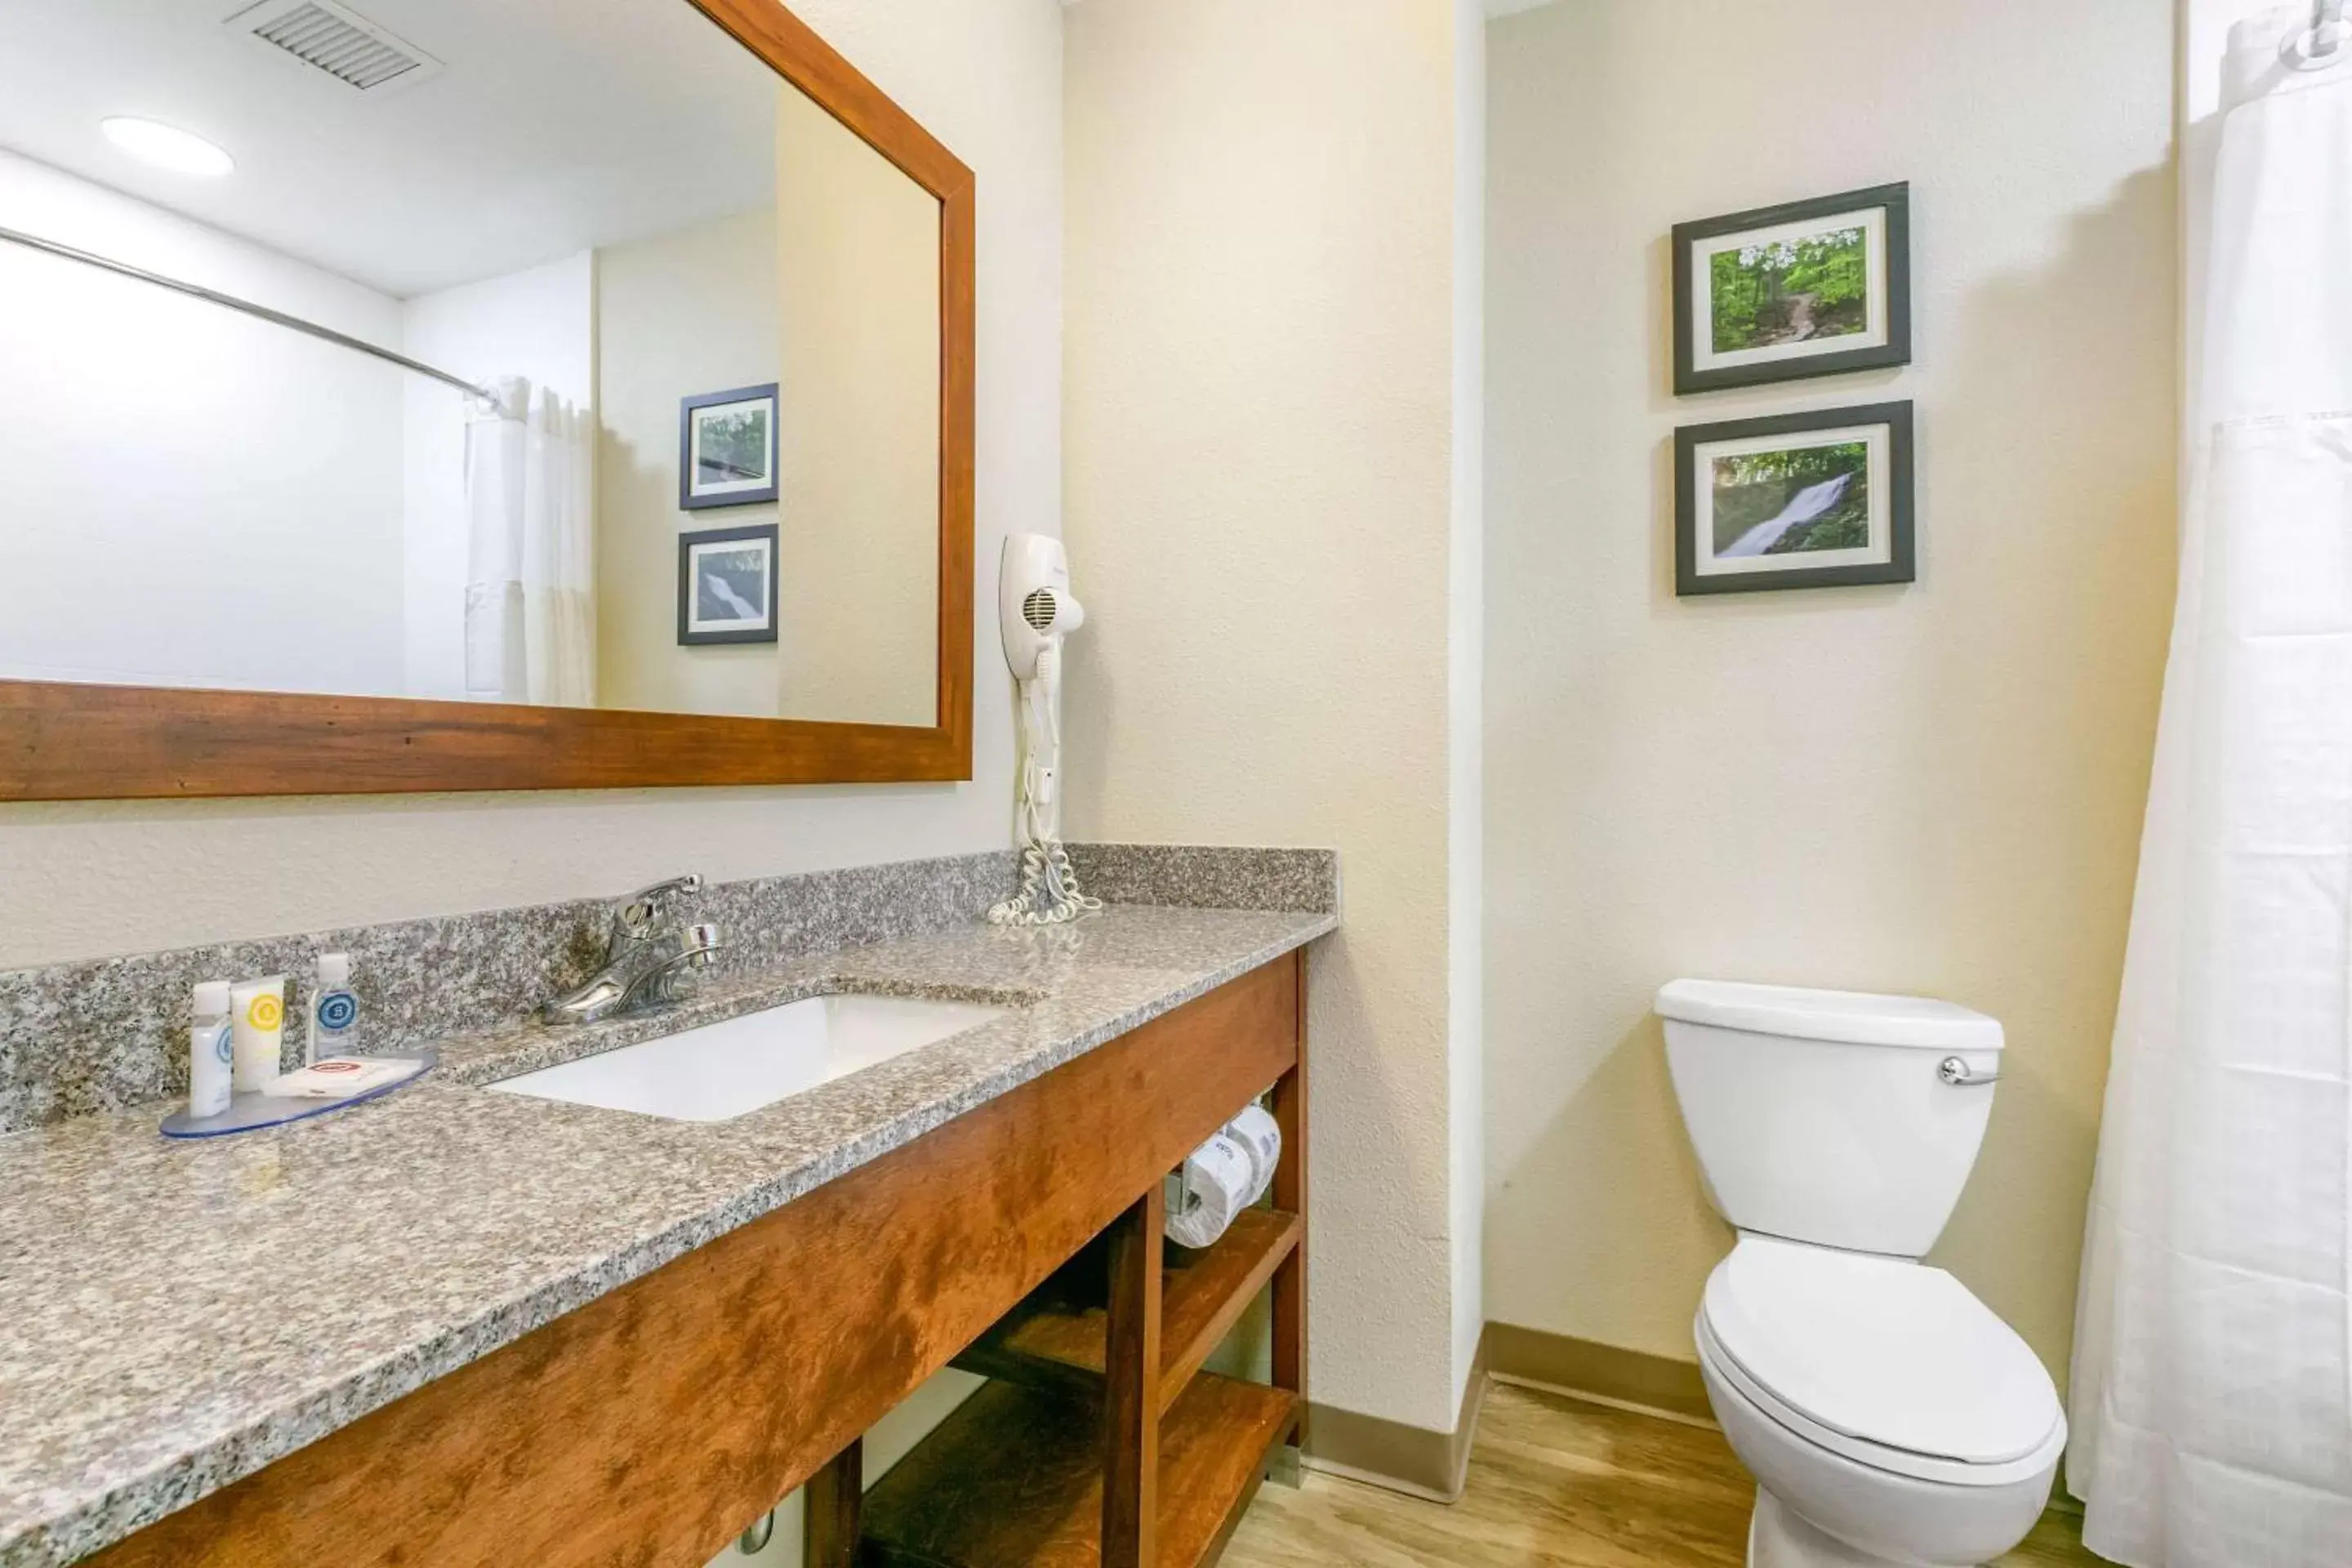 Photo of the whole room, Bathroom in Comfort Inn and Suites Van Buren - Fort Smith